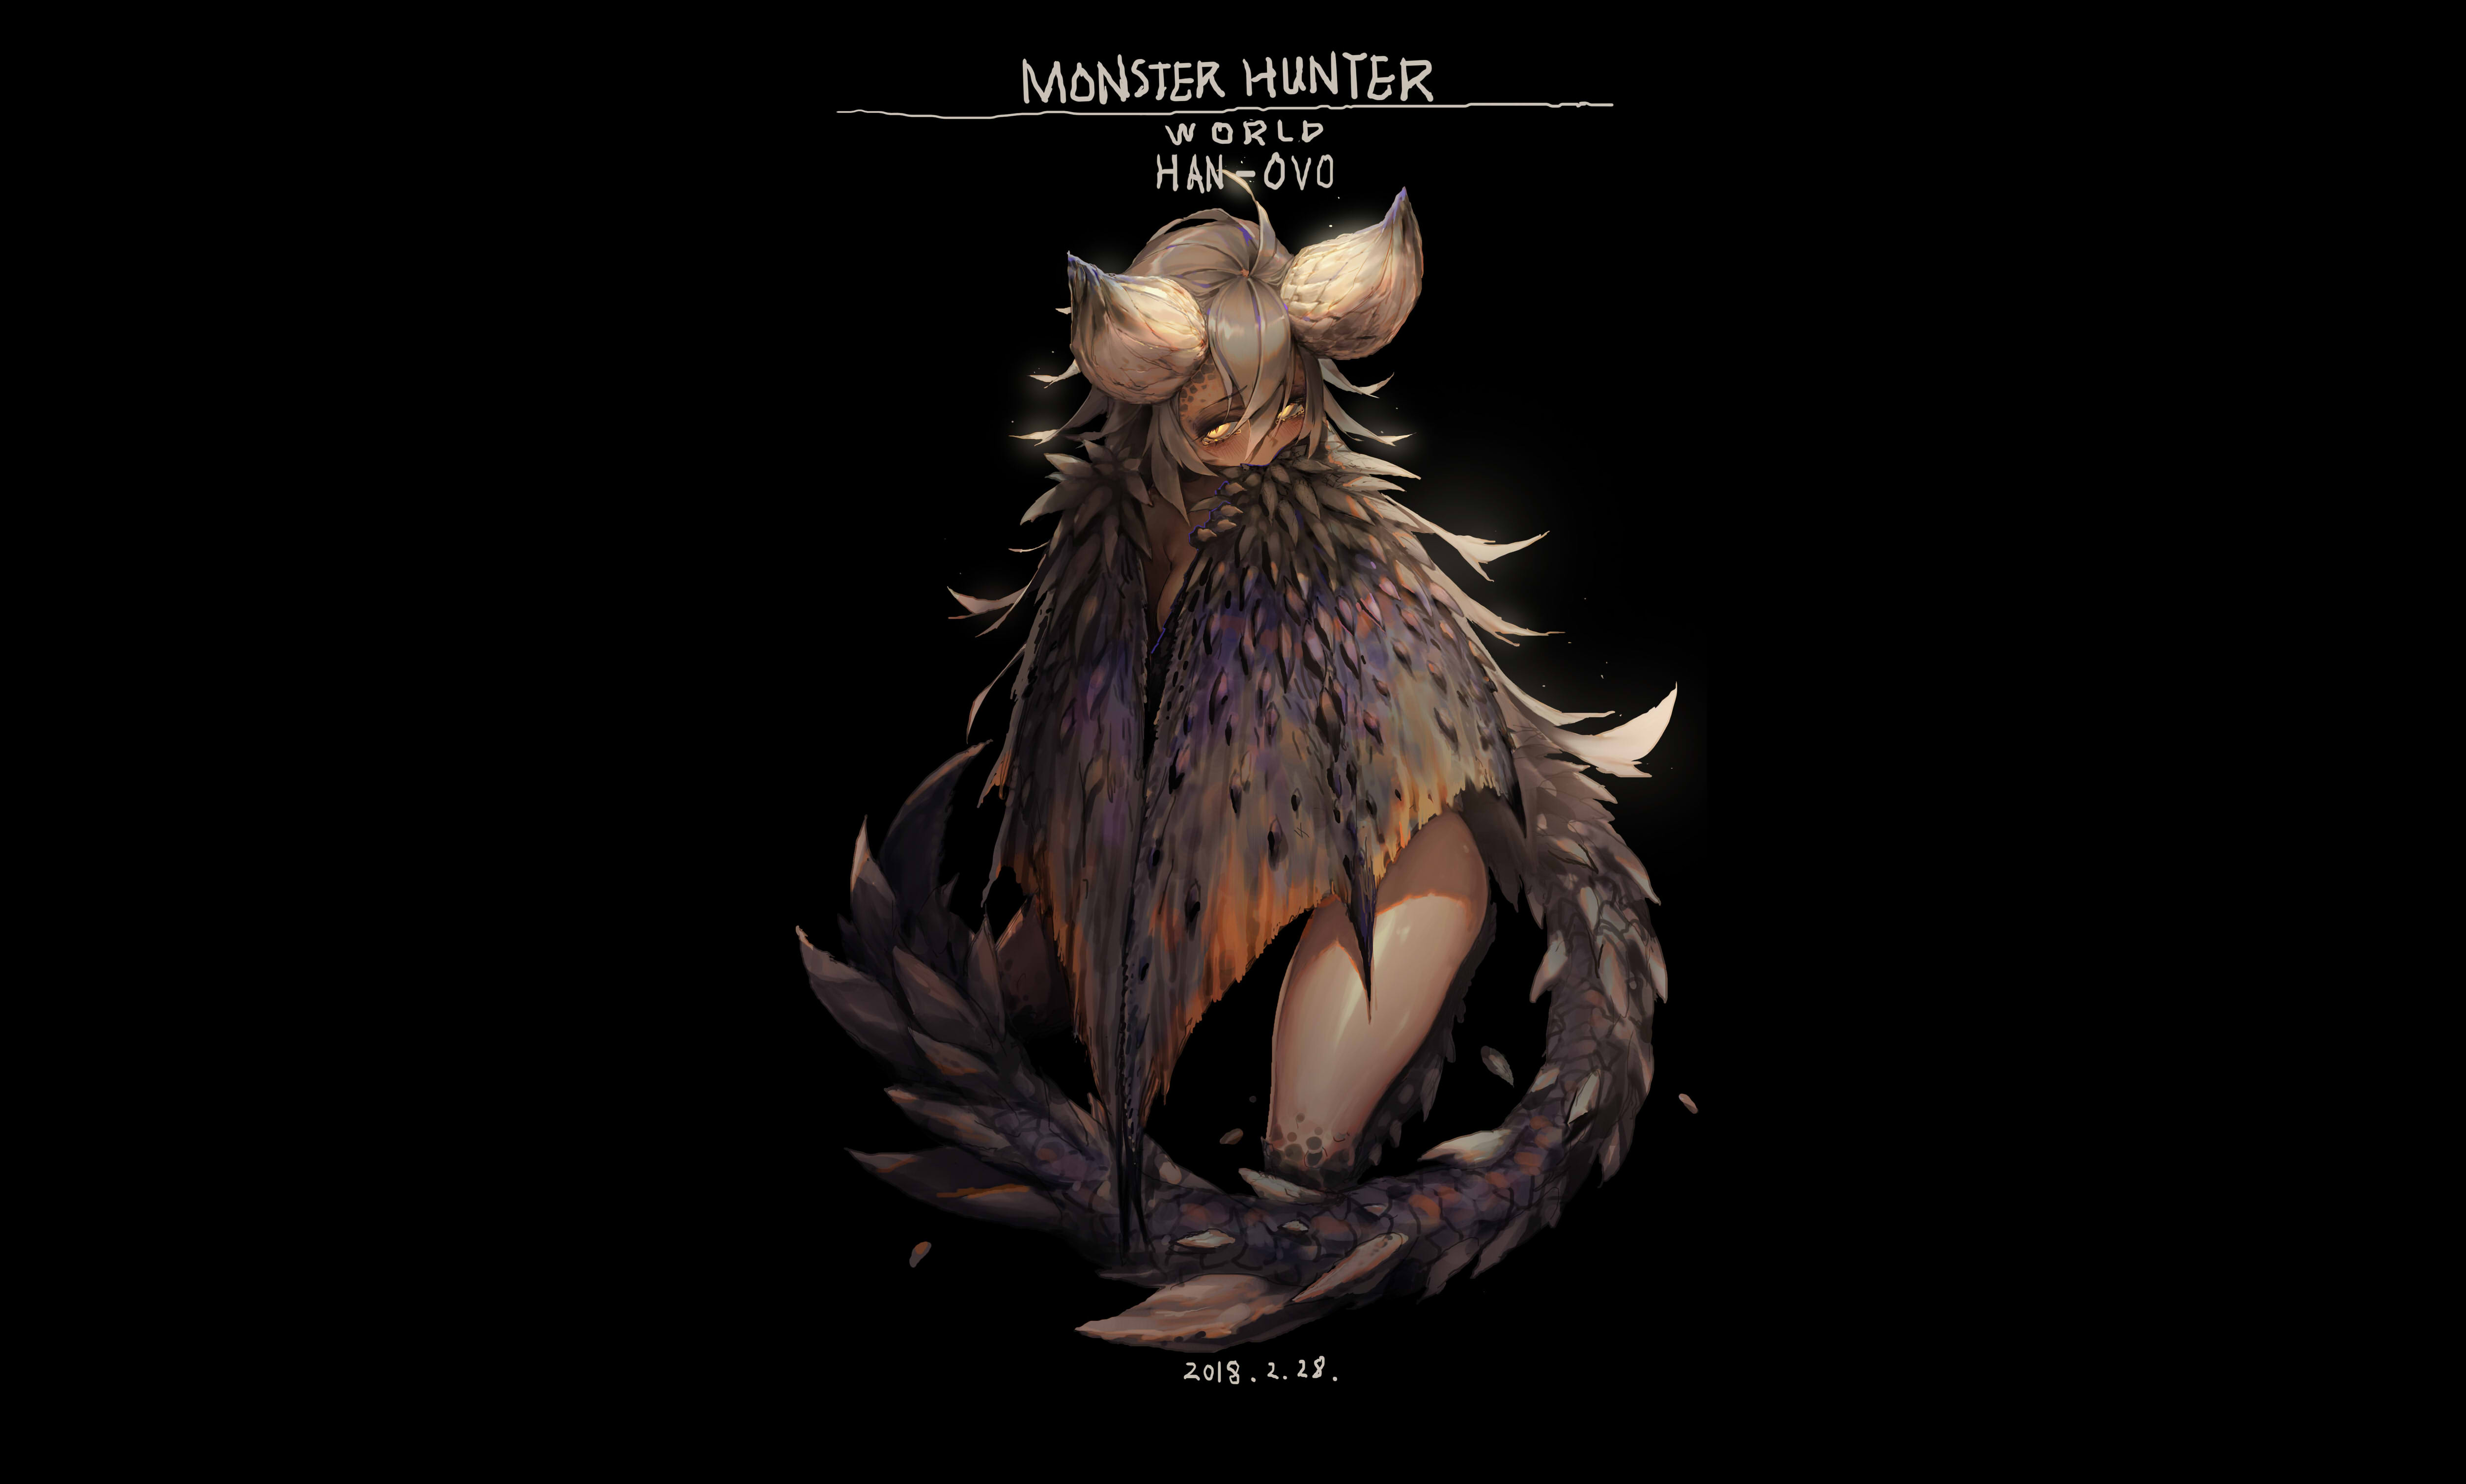 Anime 5020x3021 Monster Hunter Monster Hunter: World Han-0v0 thighs black background simple background